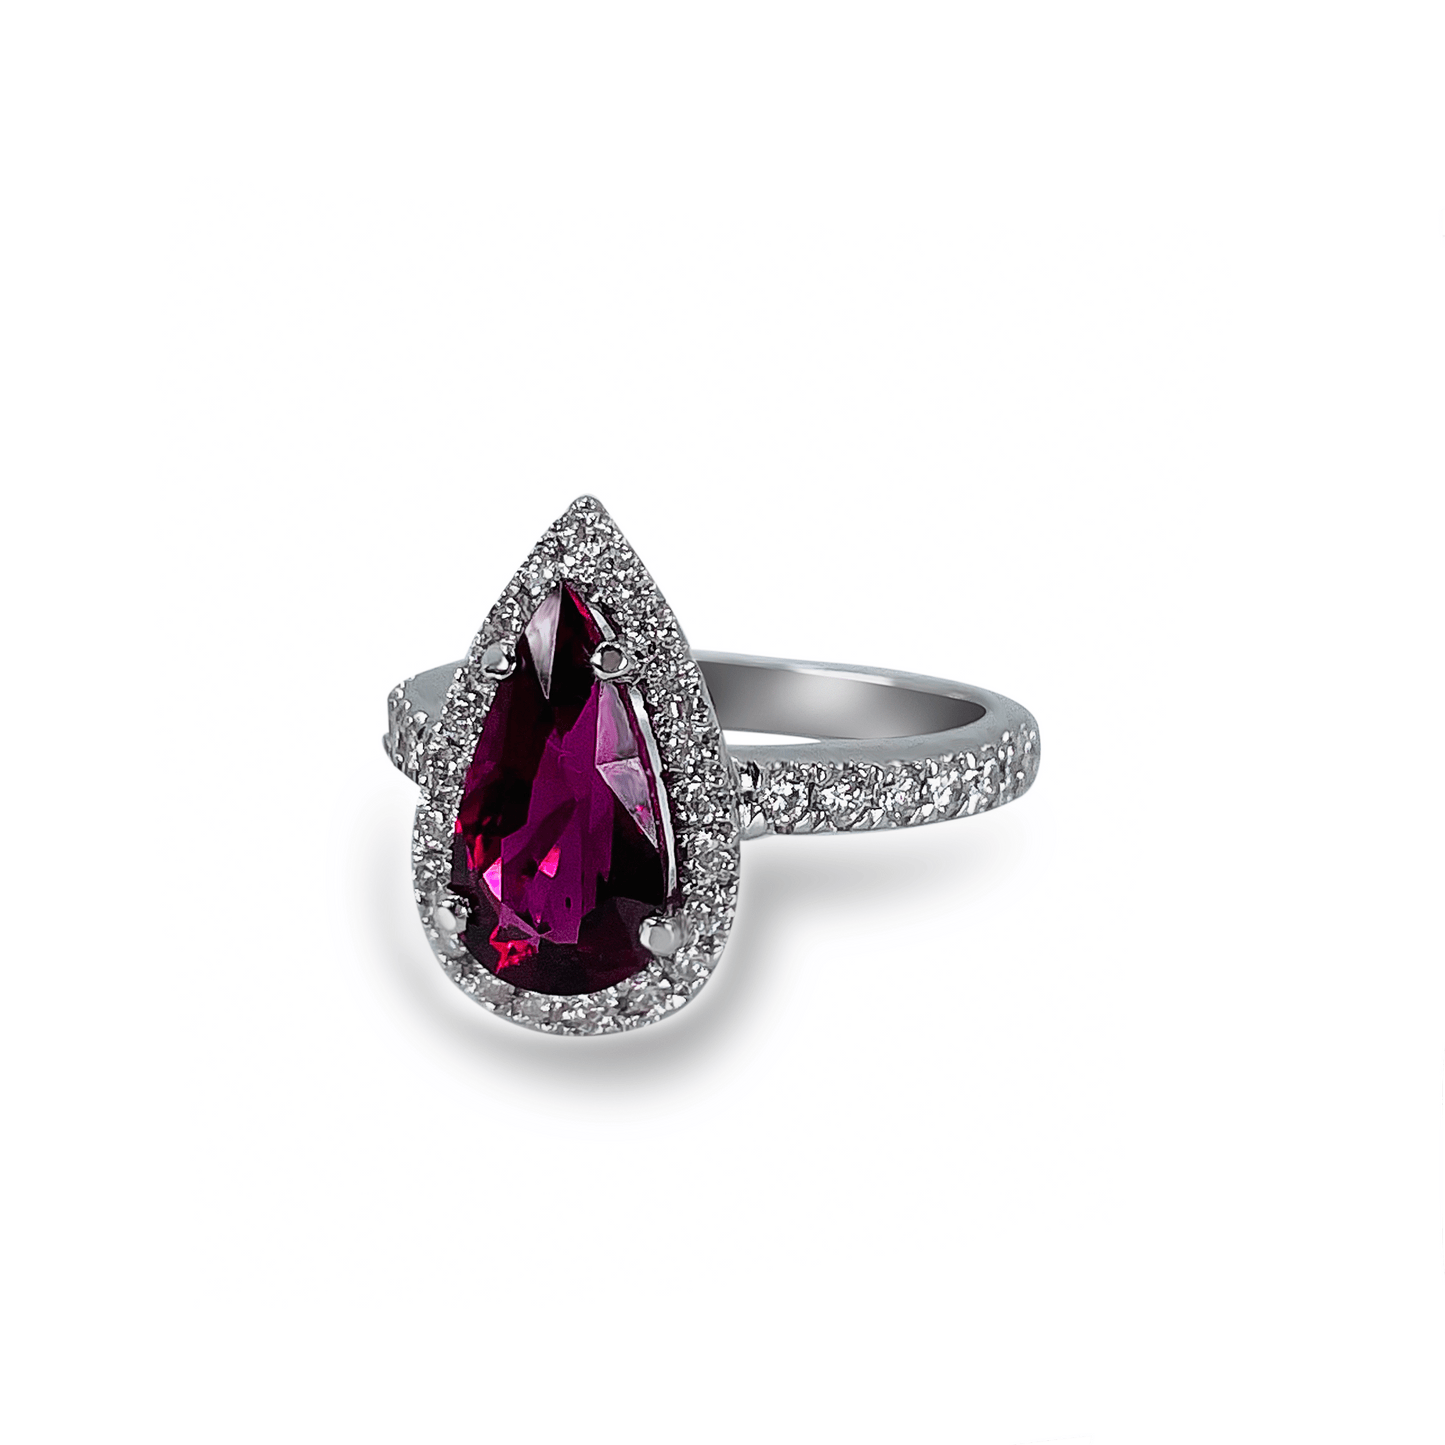 Rubellite with Diamond Halo Ring- جرس - Luxury Diamond Jewelry shop Dubai - SABA DIAMONDS